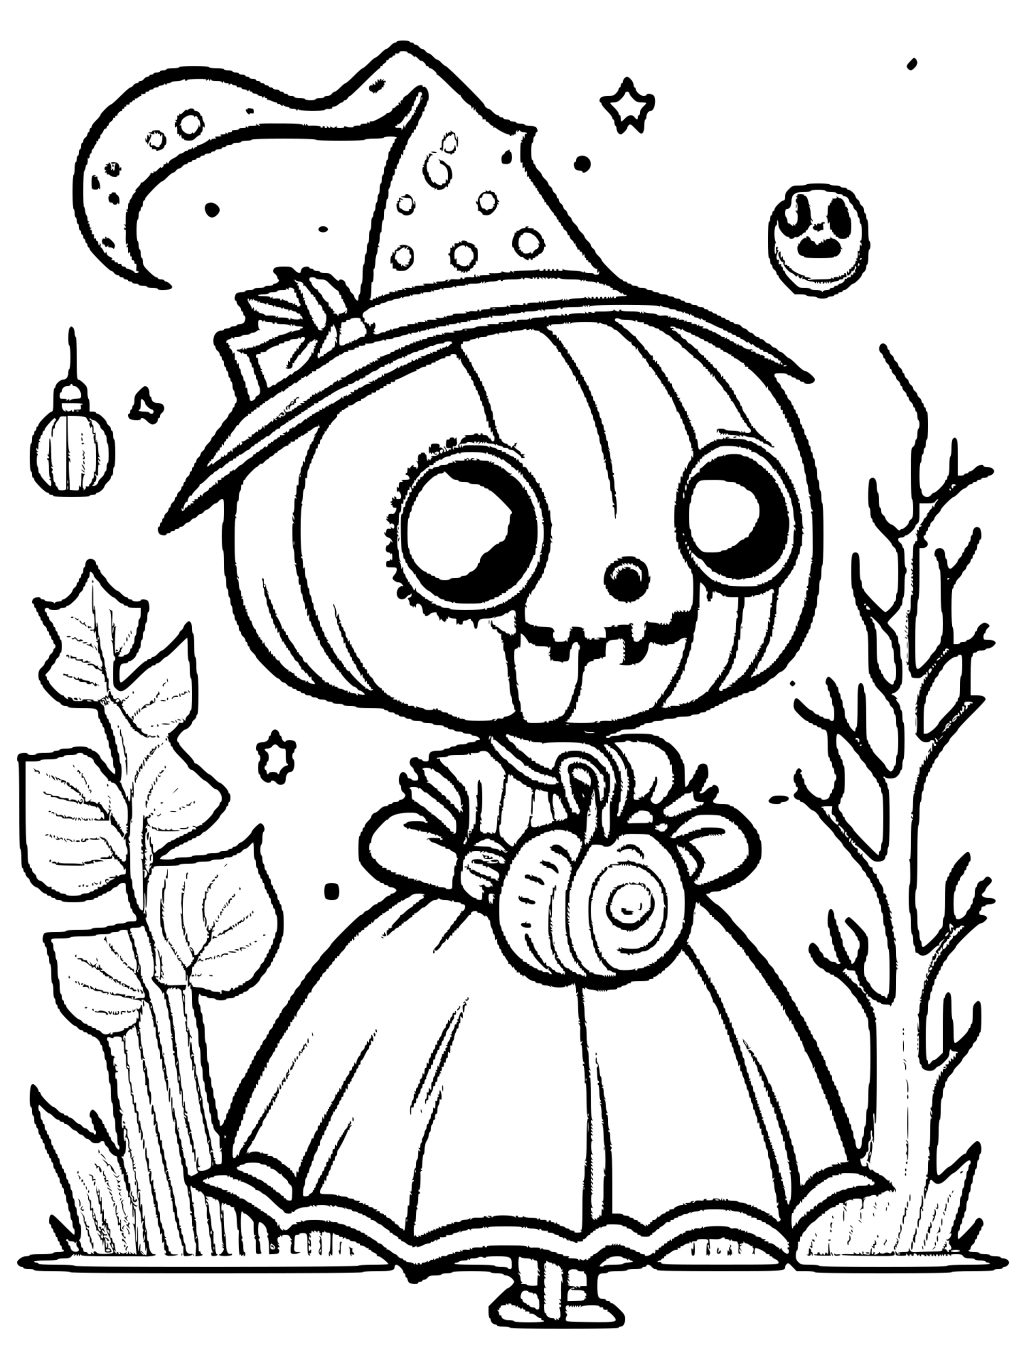 Desenho para colorir de personagens fofos de Halloween · Creative Fabrica